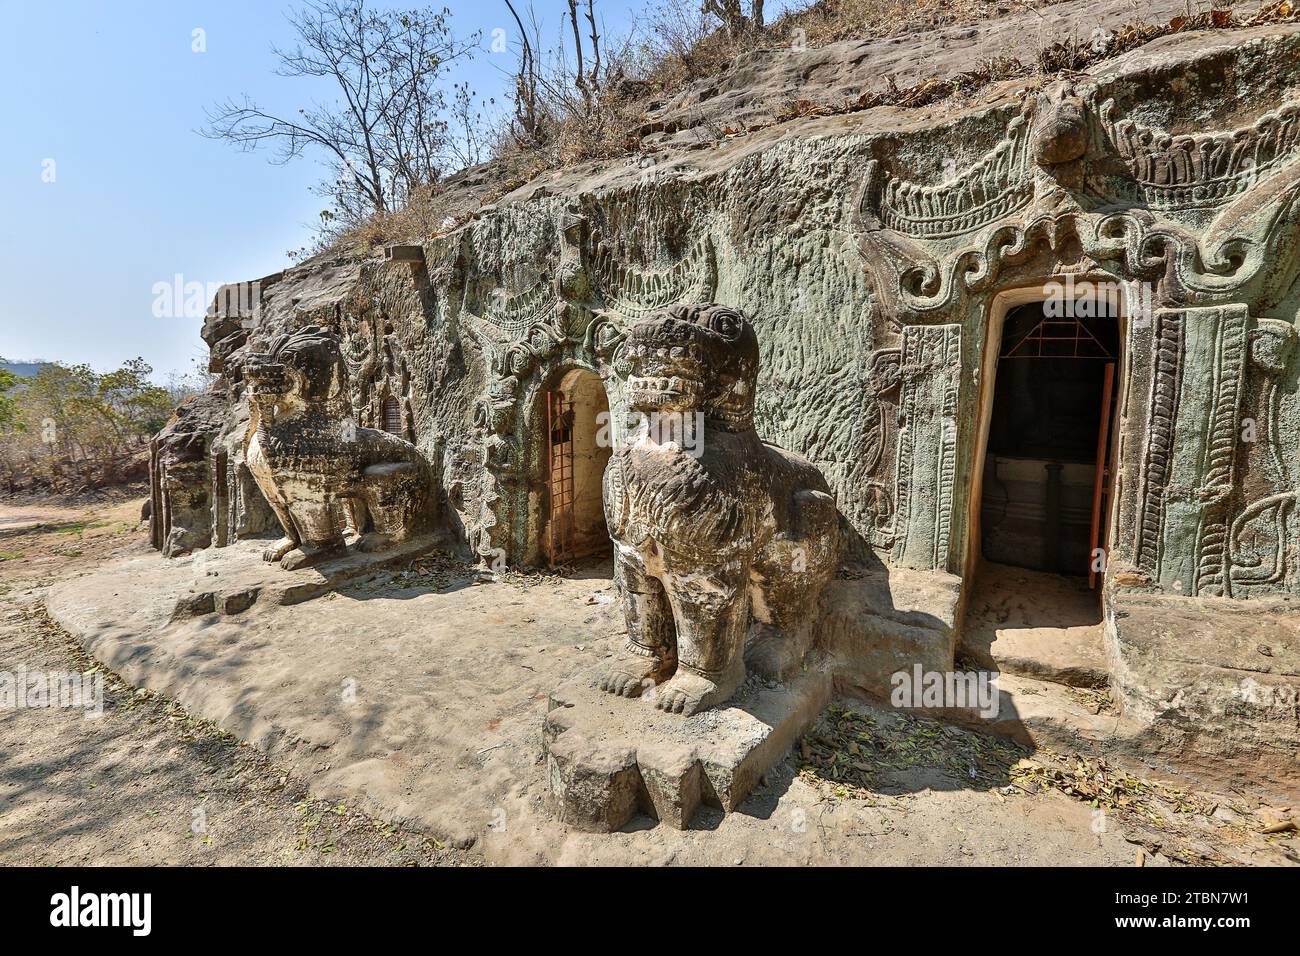 Le complexe de grottes bouddhistes de Phowintaung (ဖိုလ်ဝင်တောင်), près de Monywa, Myanmar, grottes de Shweba Taung, Pho Win Taung, Banque D'Images